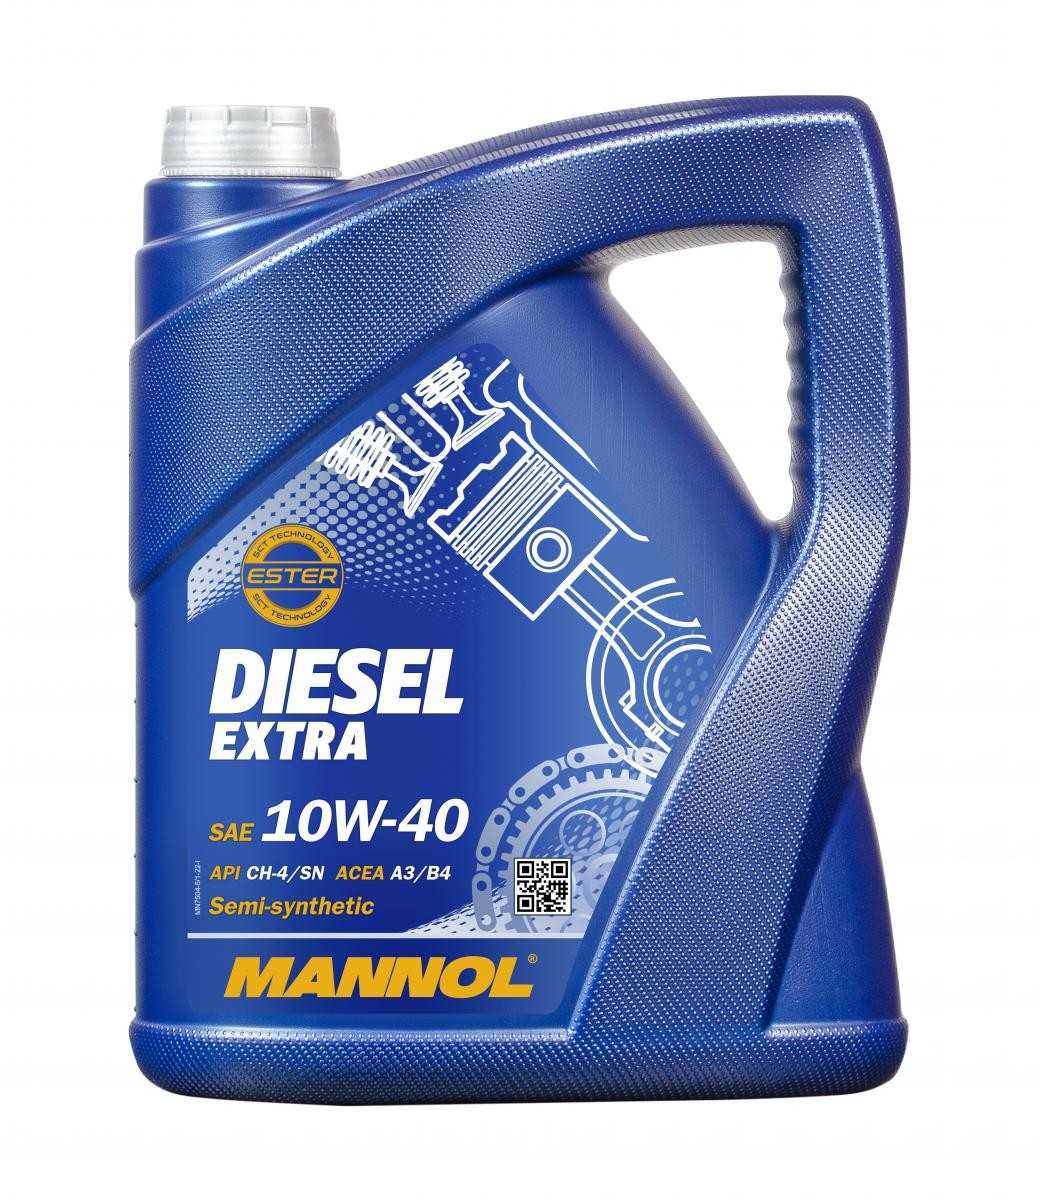 Car oil 10W-40 longlife diesel - MN7504-5 MANNOL DIESEL EXTRA